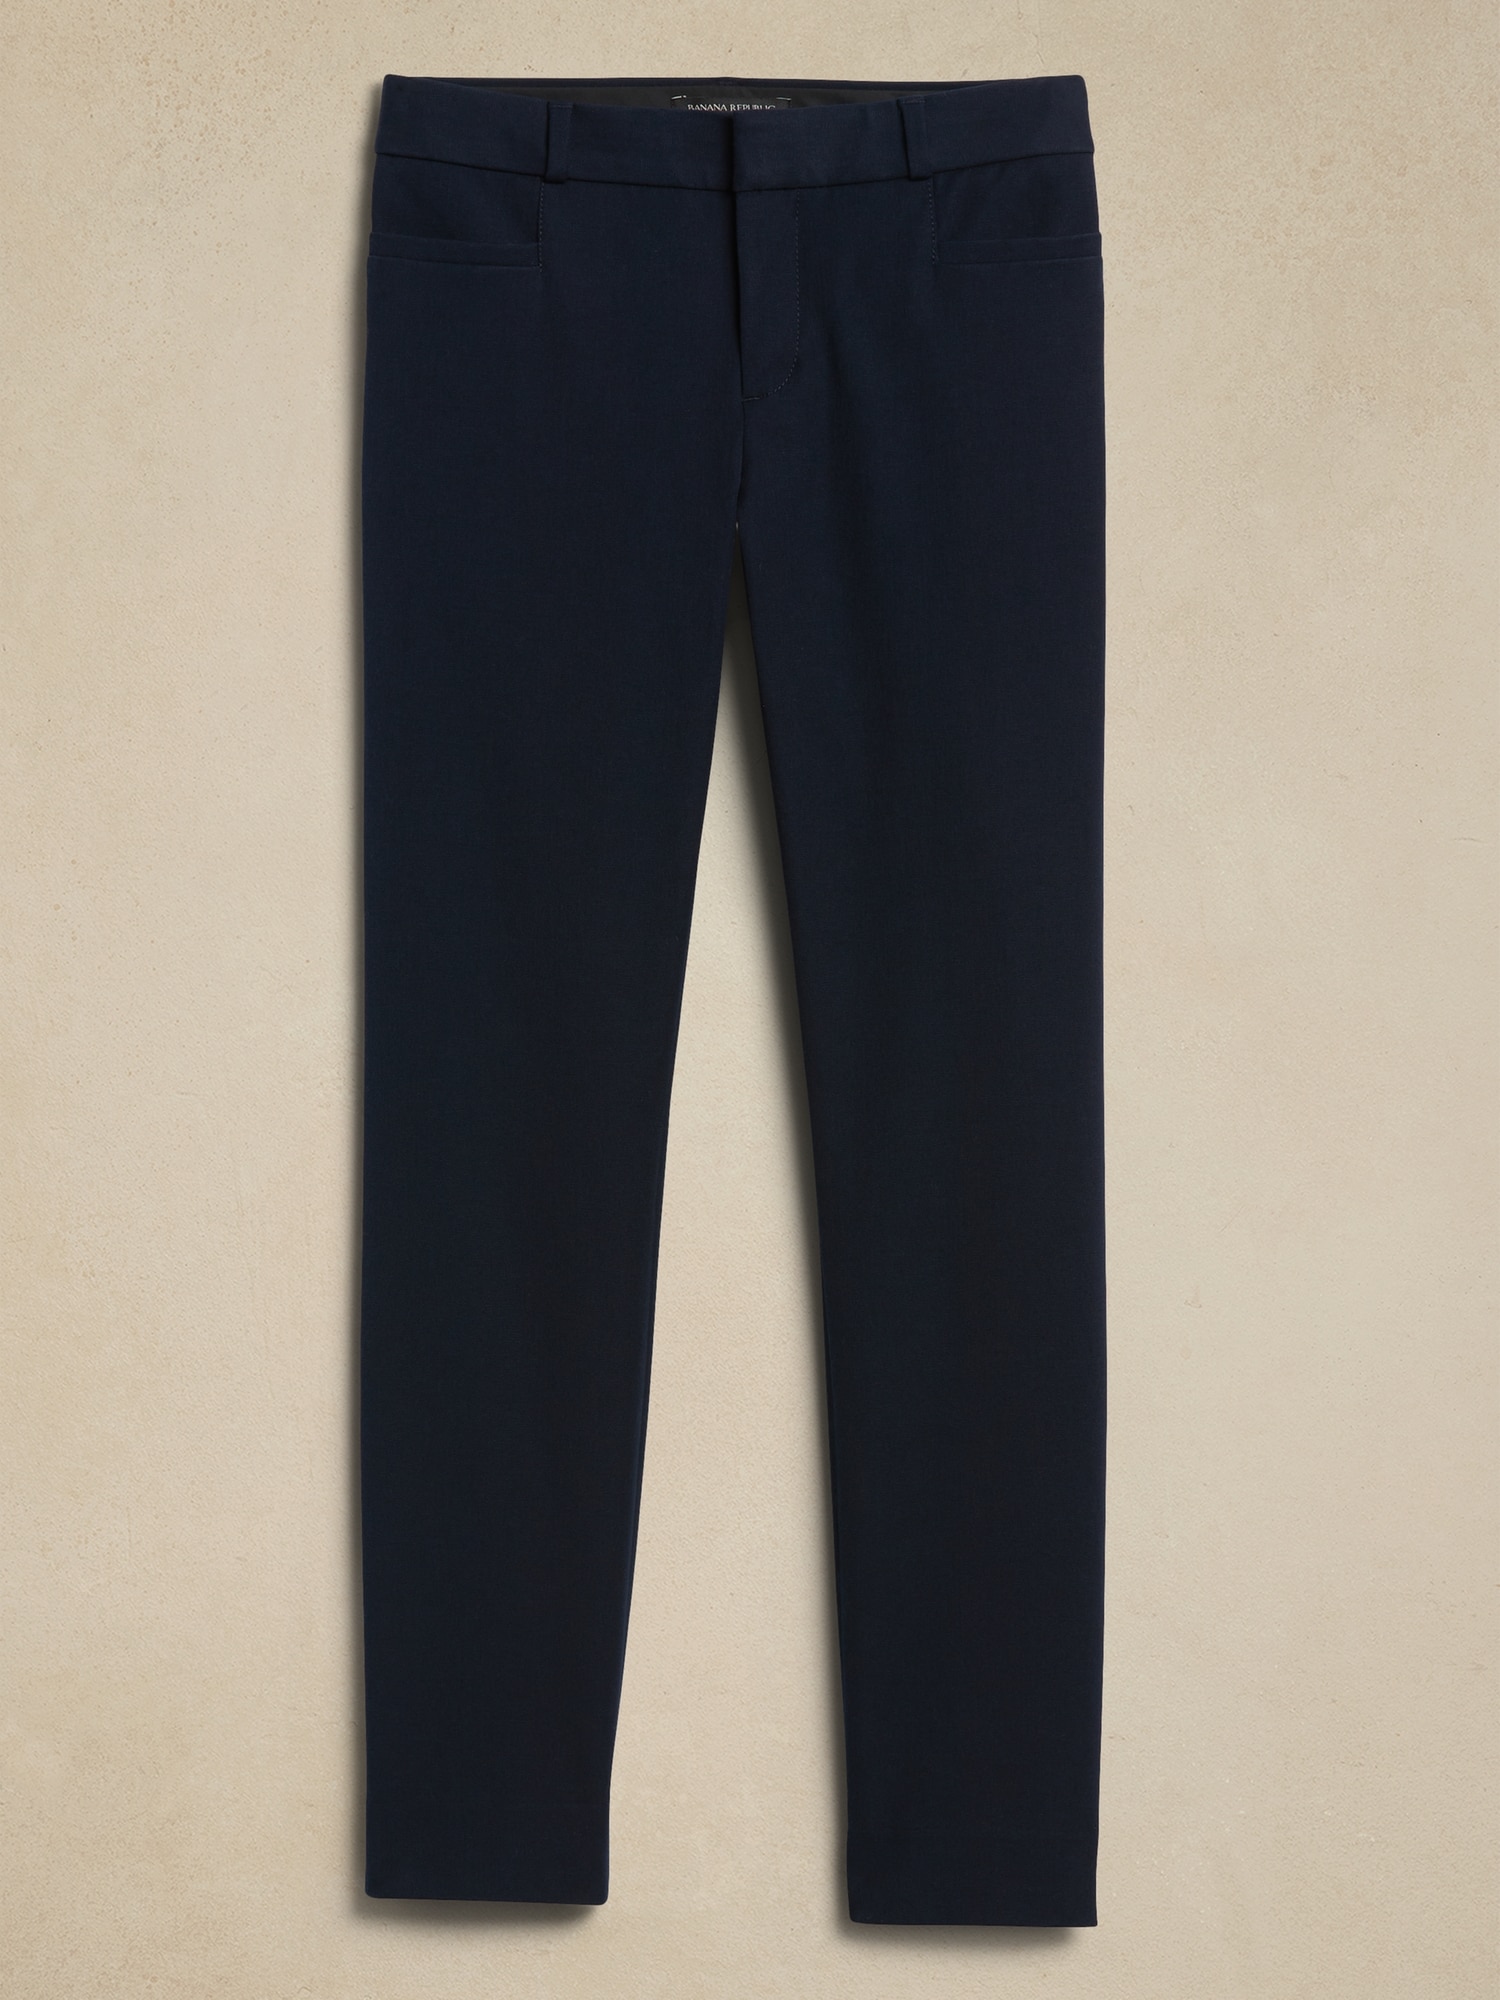 Banana Republic Sloan Blue Printed Pants Women's Size 4 - beyond